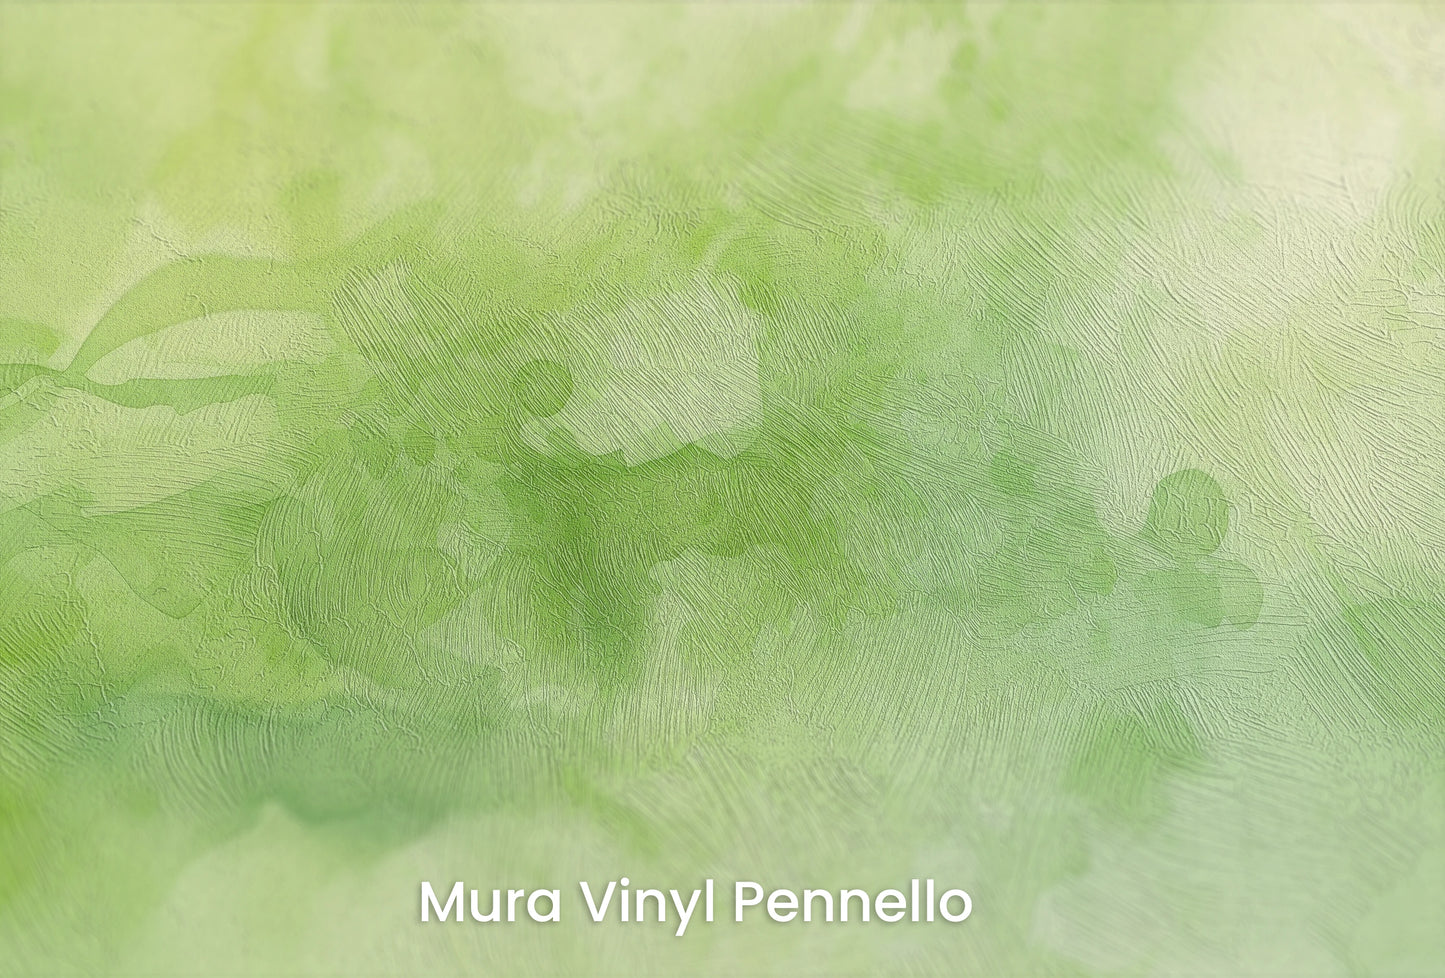 Zbliżenie na artystyczną fototapetę o nazwie Leśna Mgła na podłożu Mura Vinyl Pennello - faktura pociągnięć pędzla malarskiego.